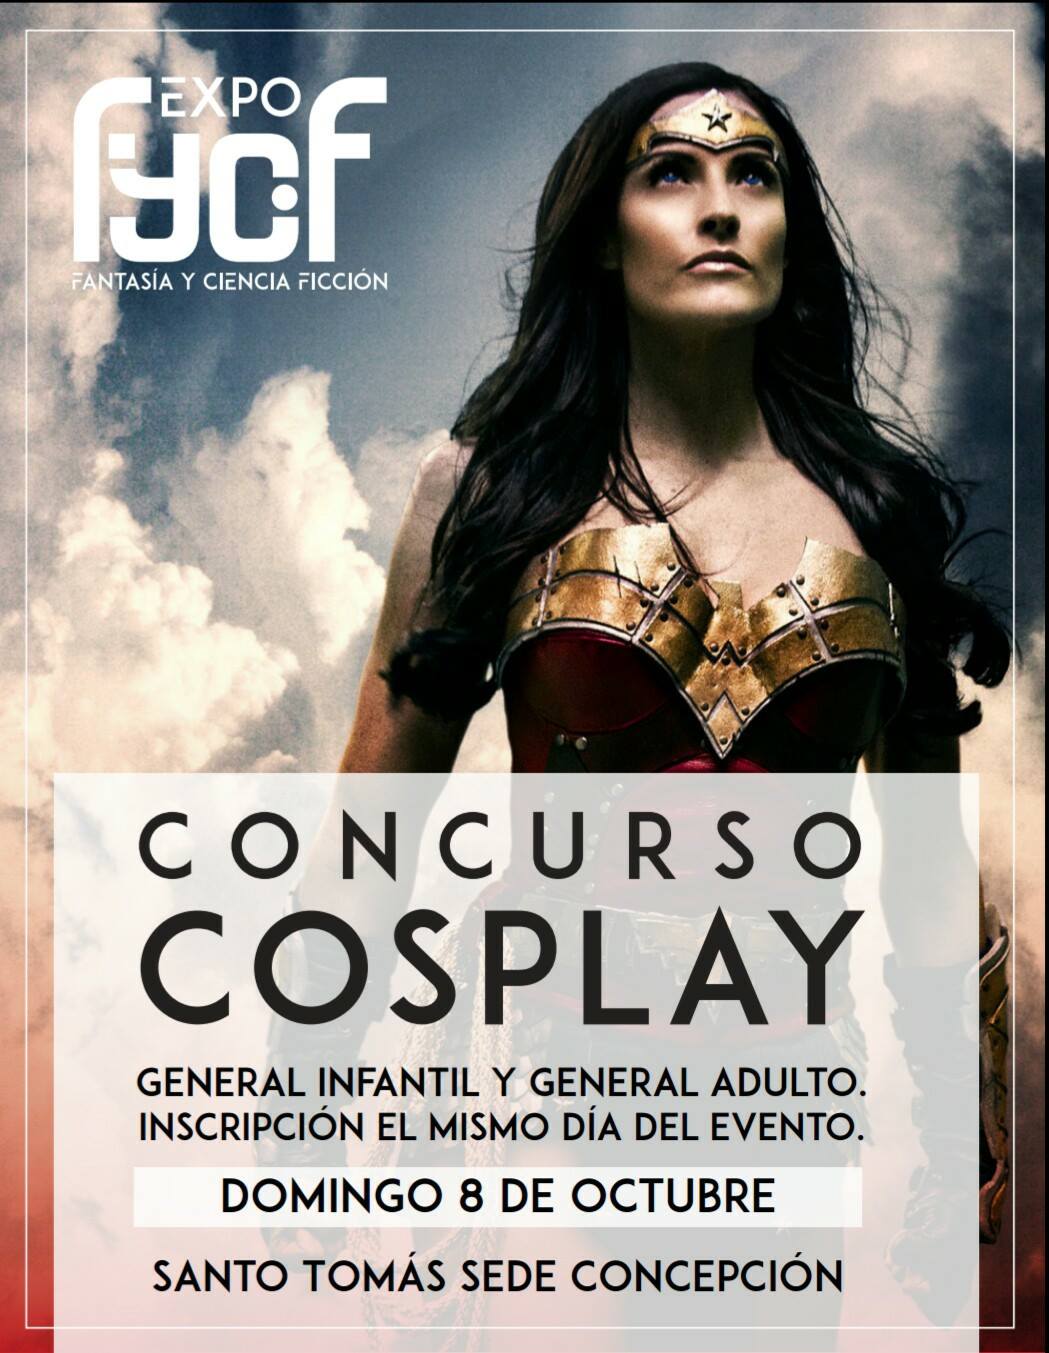 Expo FYCIF - Afiche concurso cosplay